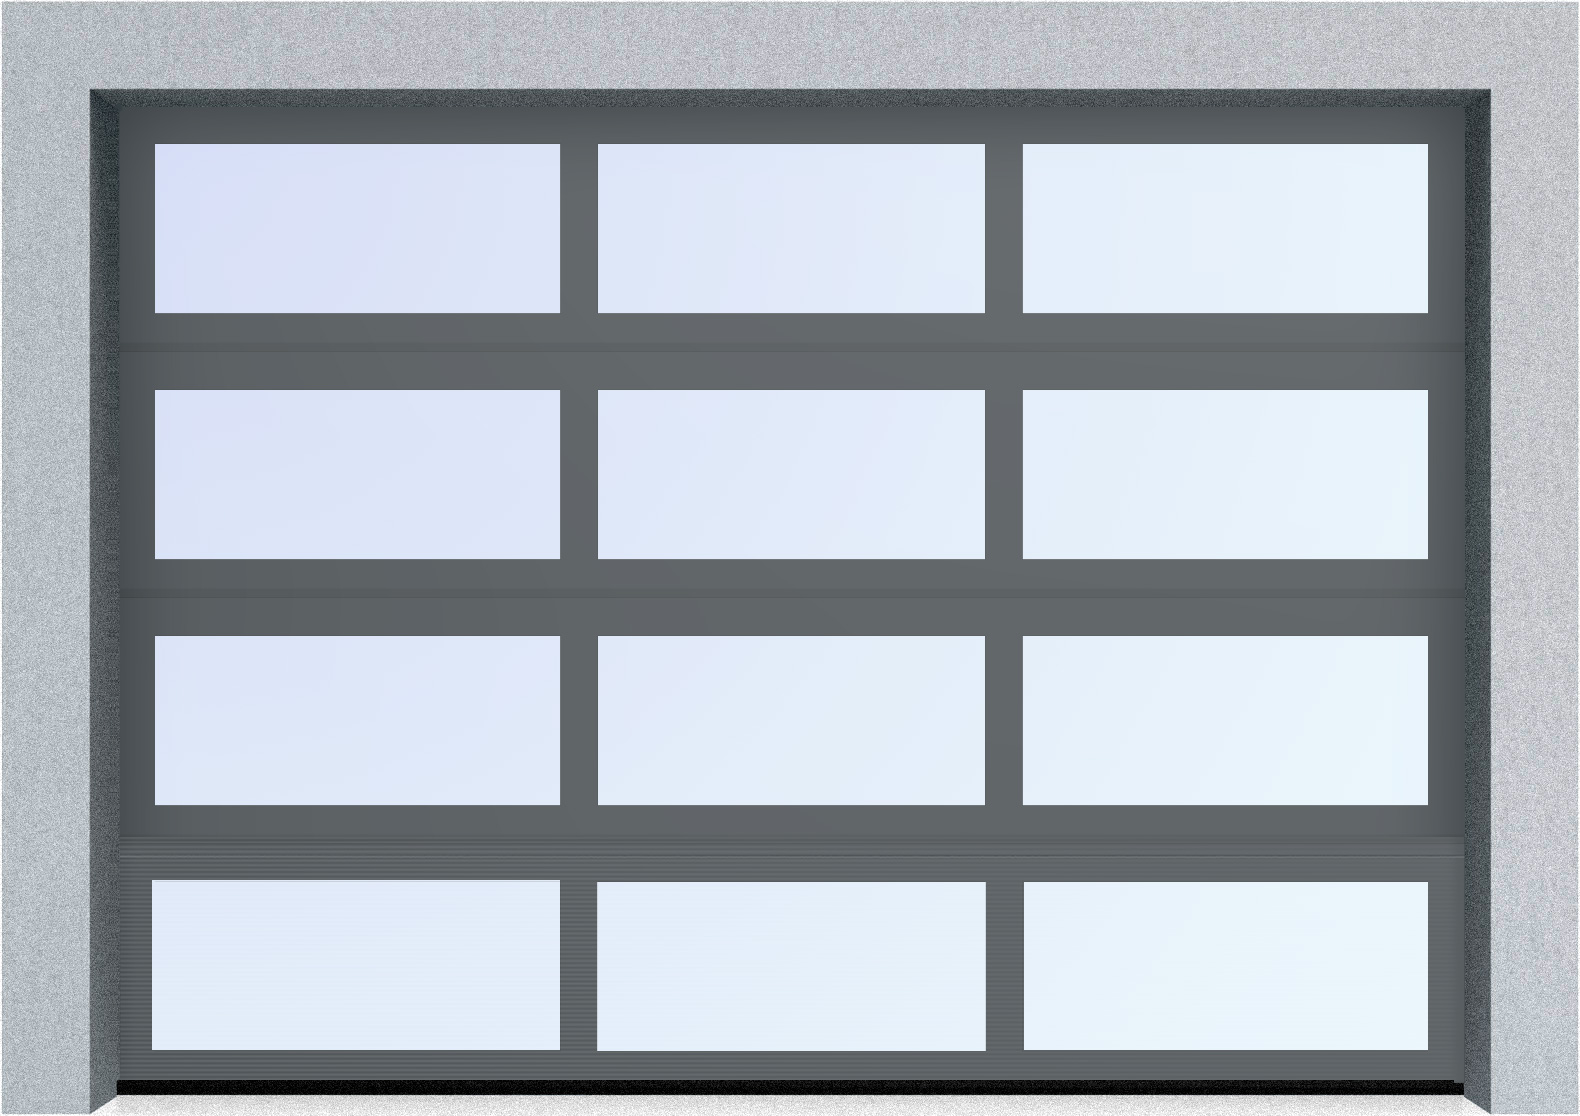  Секционные панорамные ворота серии AluTrend (АЛП) 6375х4500 нижняя панель стандартные цвета, фото 5 